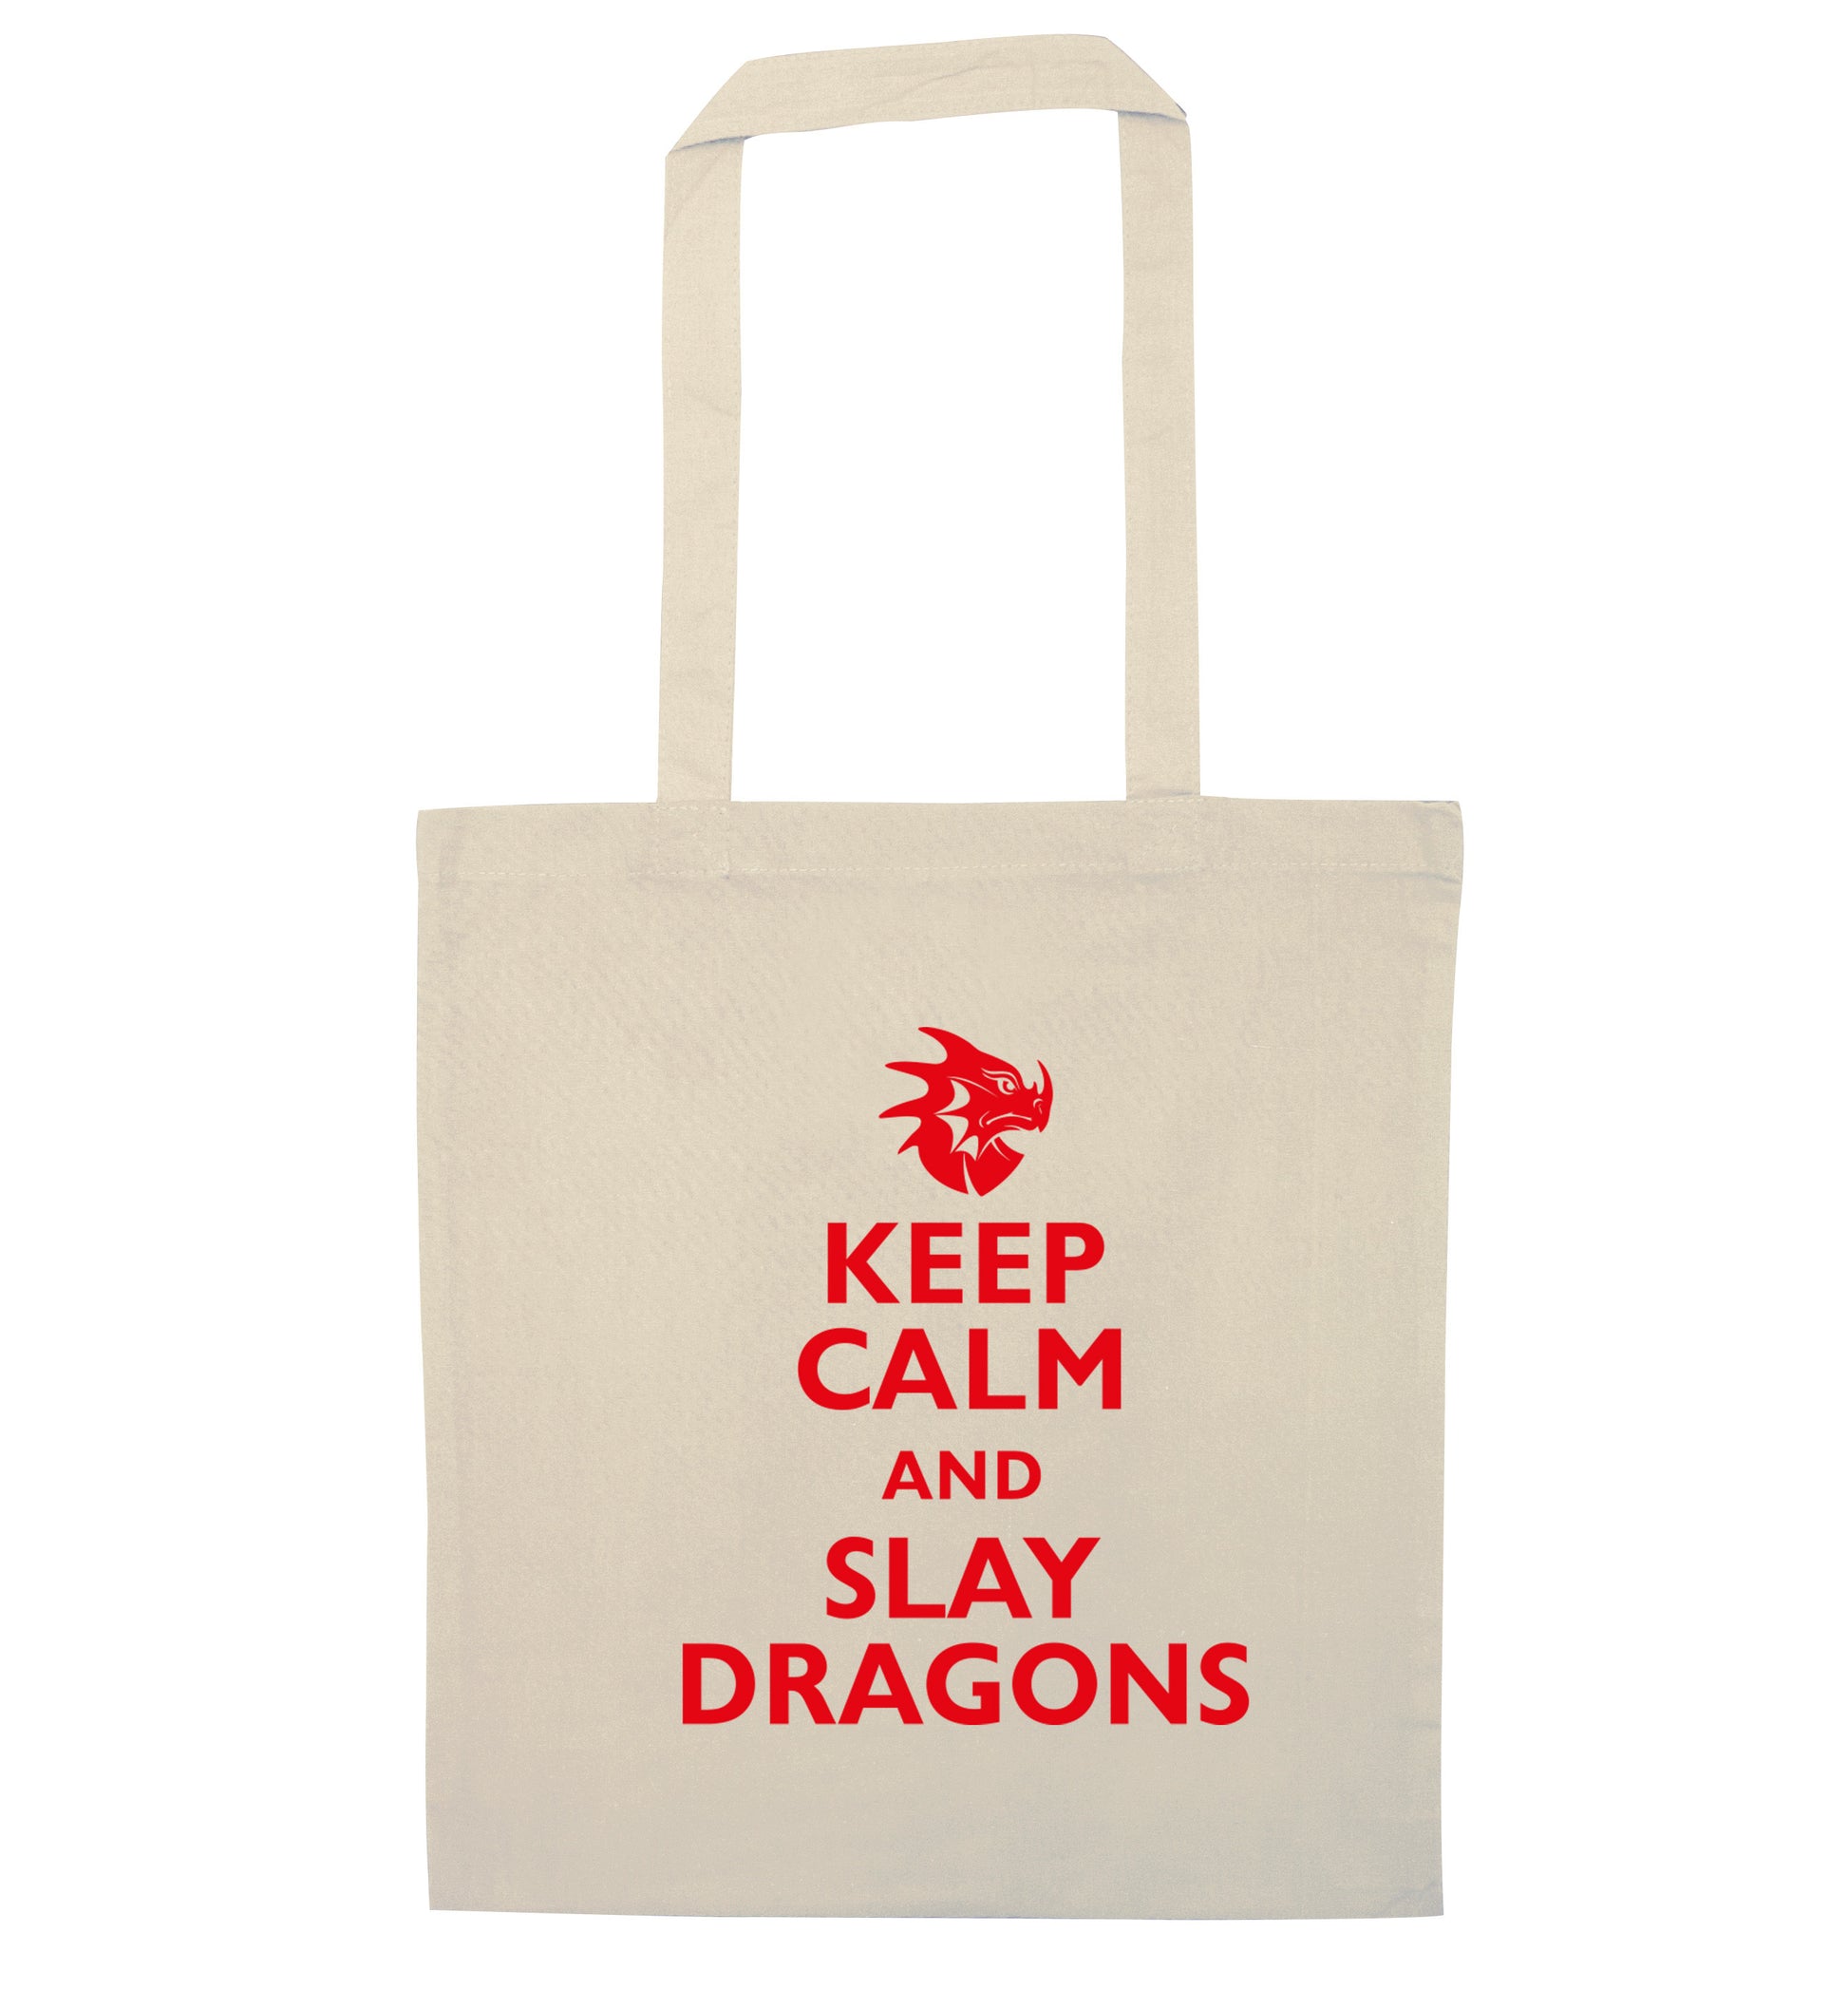 Keep calm and slay dragons natural tote bag